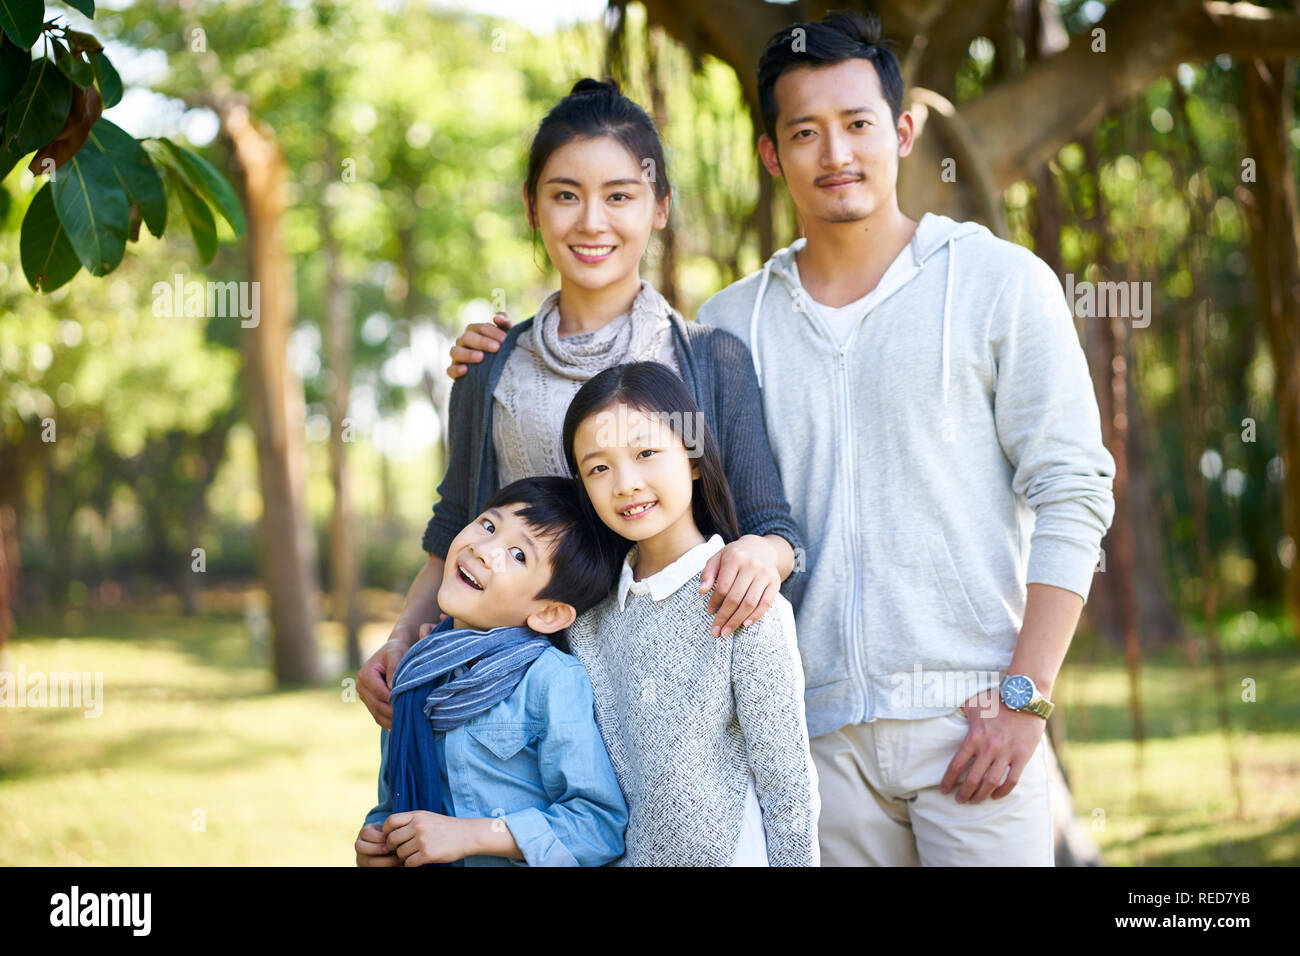 Outdoor ritratto di una famiglia asiatica con due bambini. Foto Stock